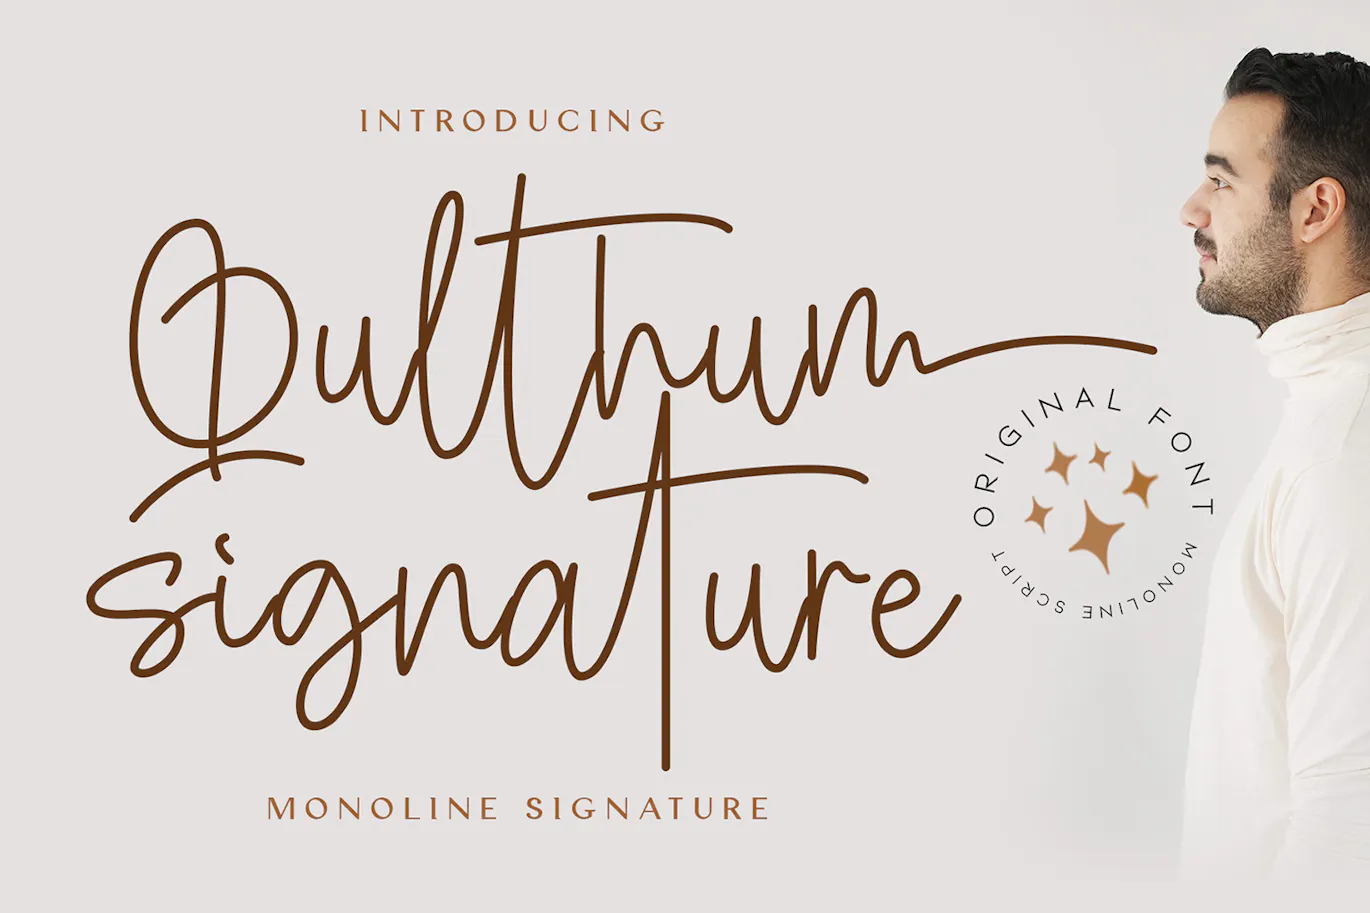 时尚优雅的手写字体 - Qulthum Signature 设计字体 第8张